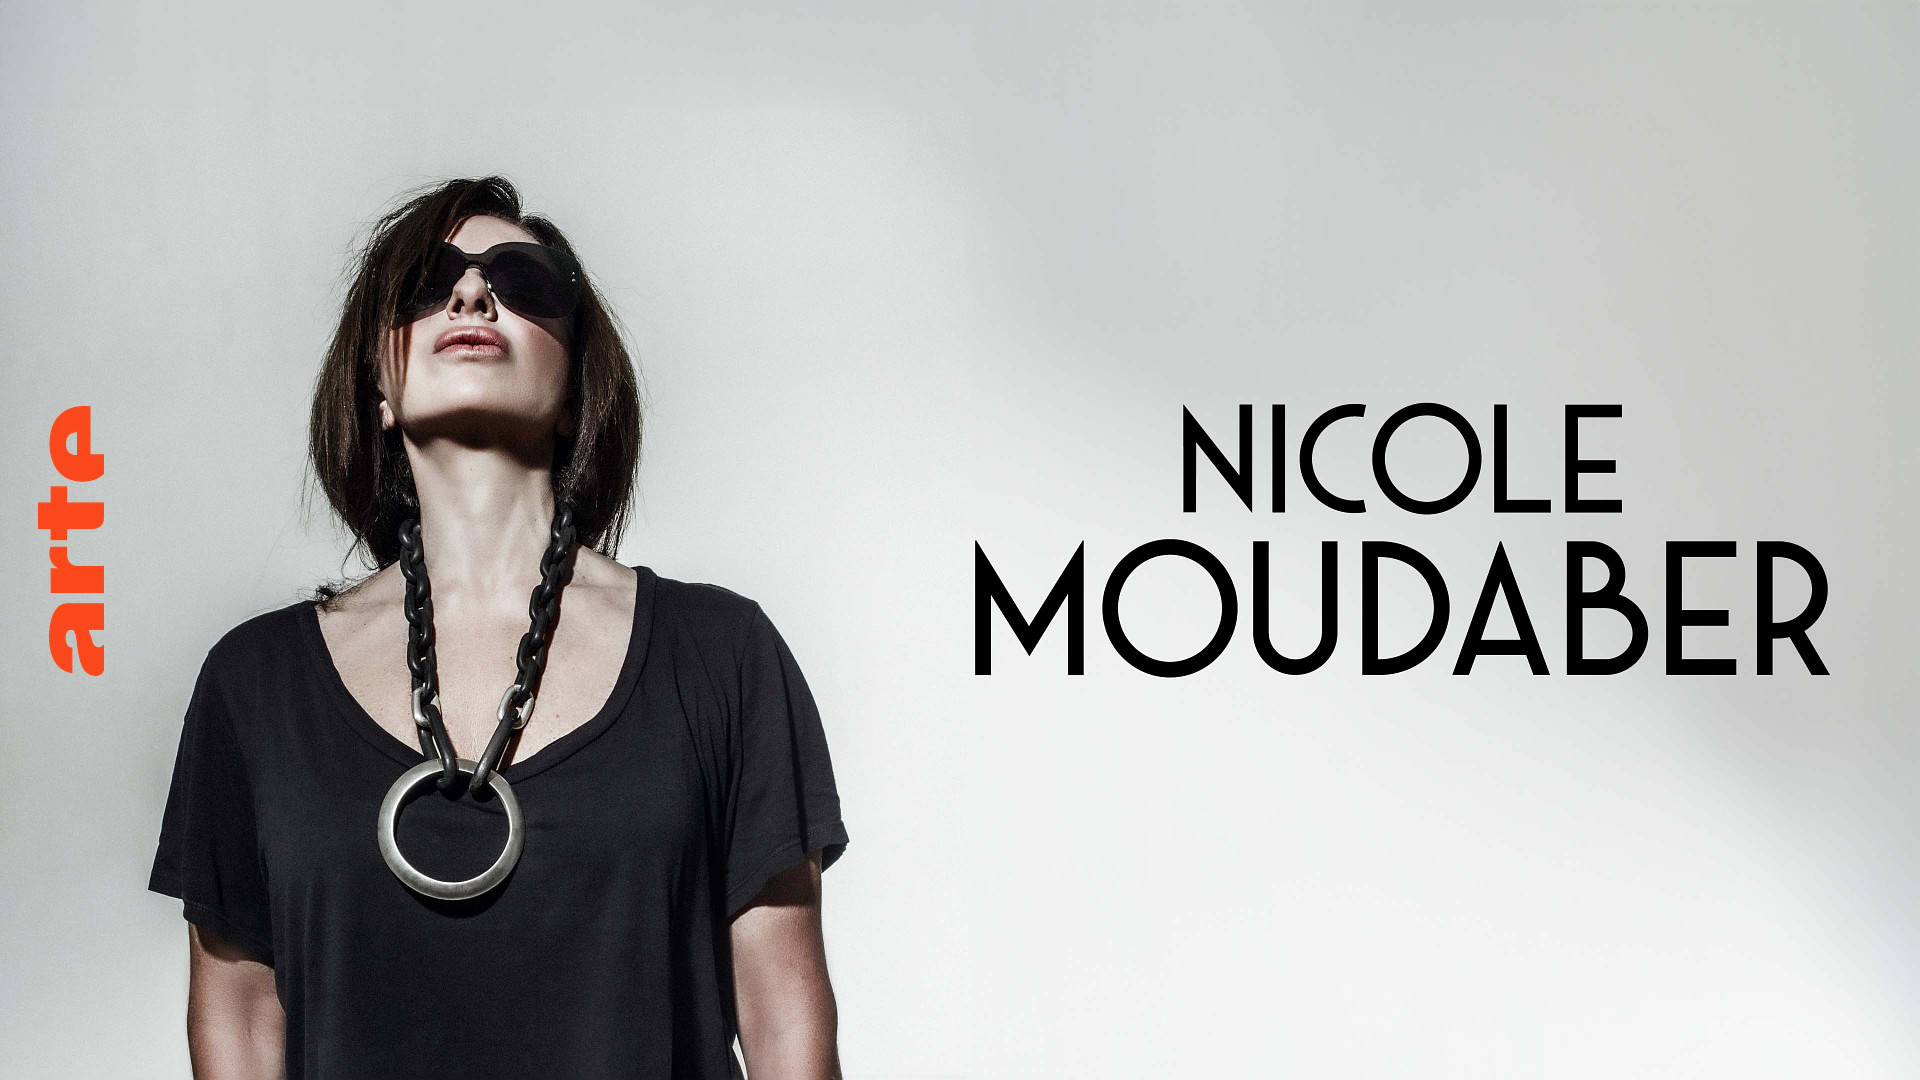 Nicole Moudaber